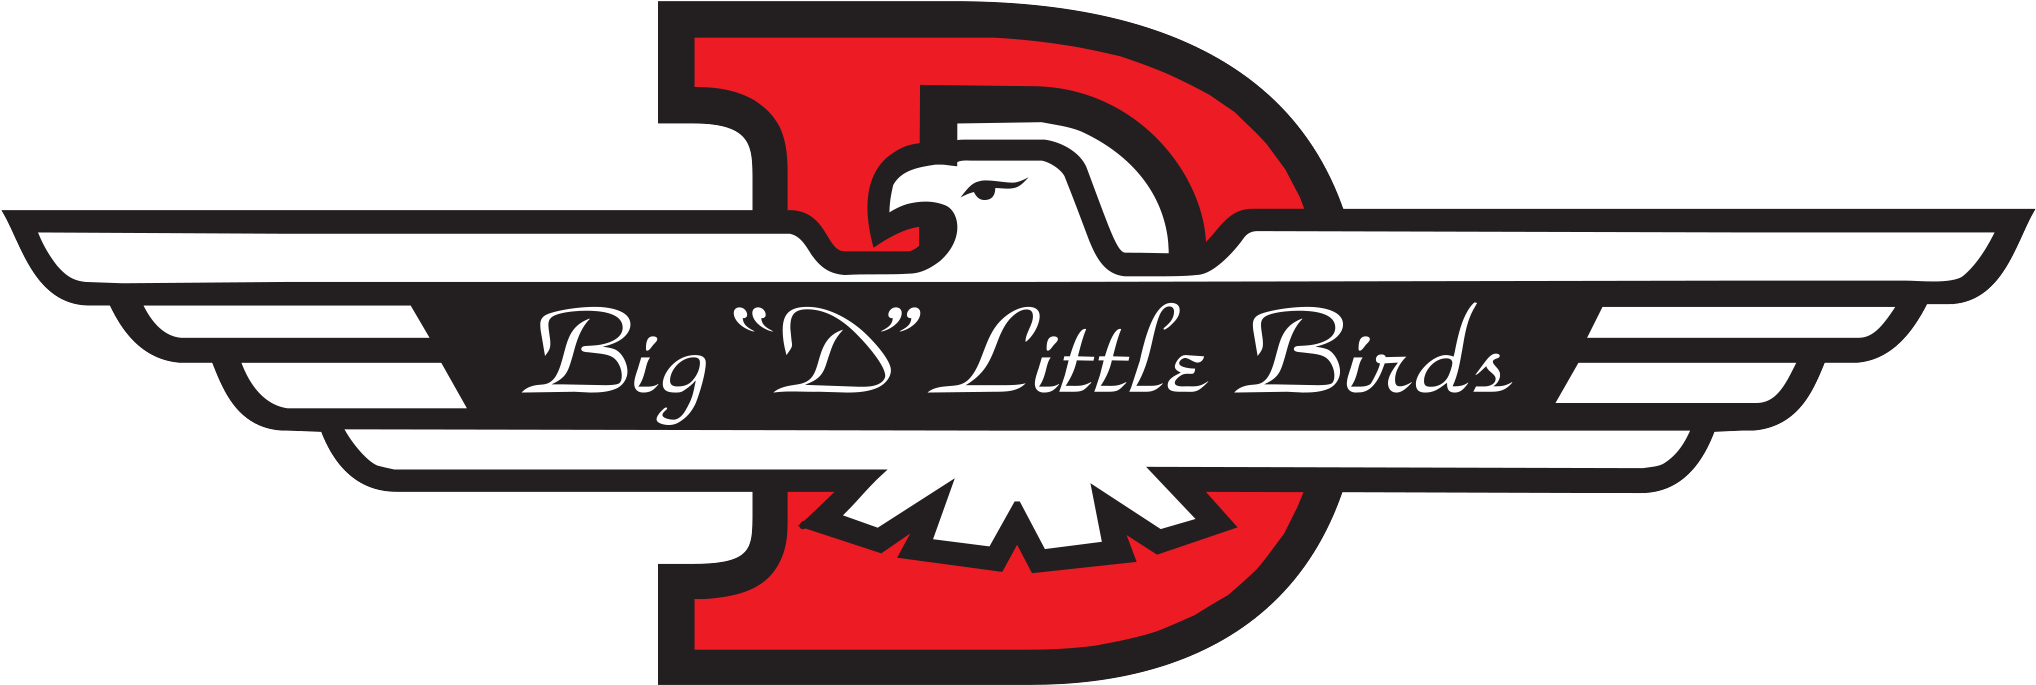 Big D Little Birds - Ford T Bird Logo (2057x704)